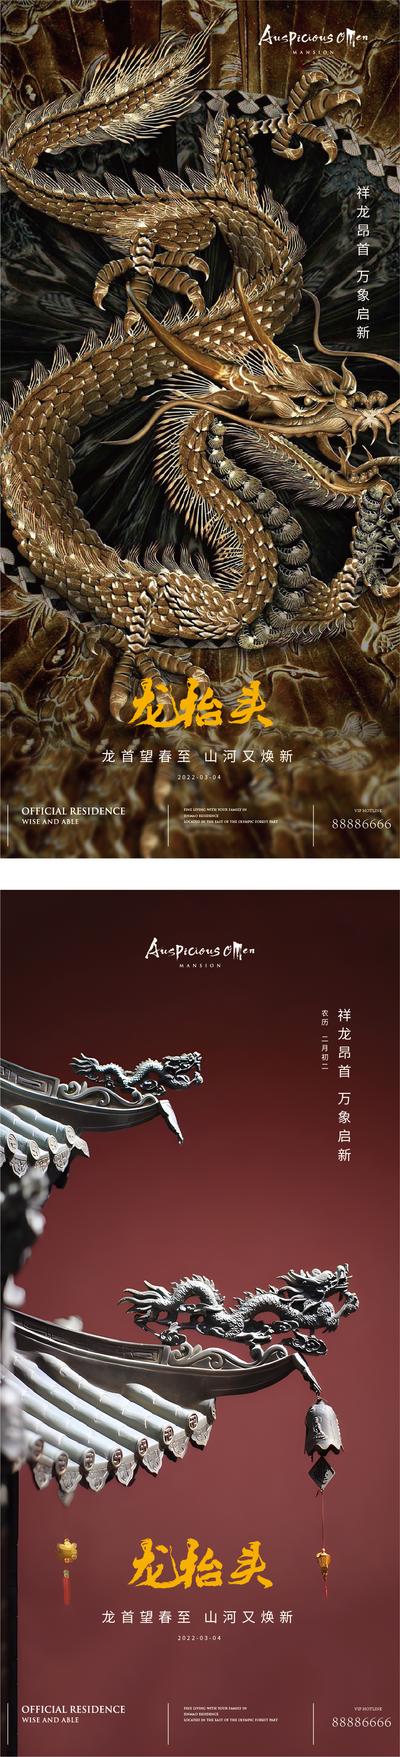 南门网 海报 中国传统节日 二月二 龙抬头 中式 龙 雕塑 屋檐